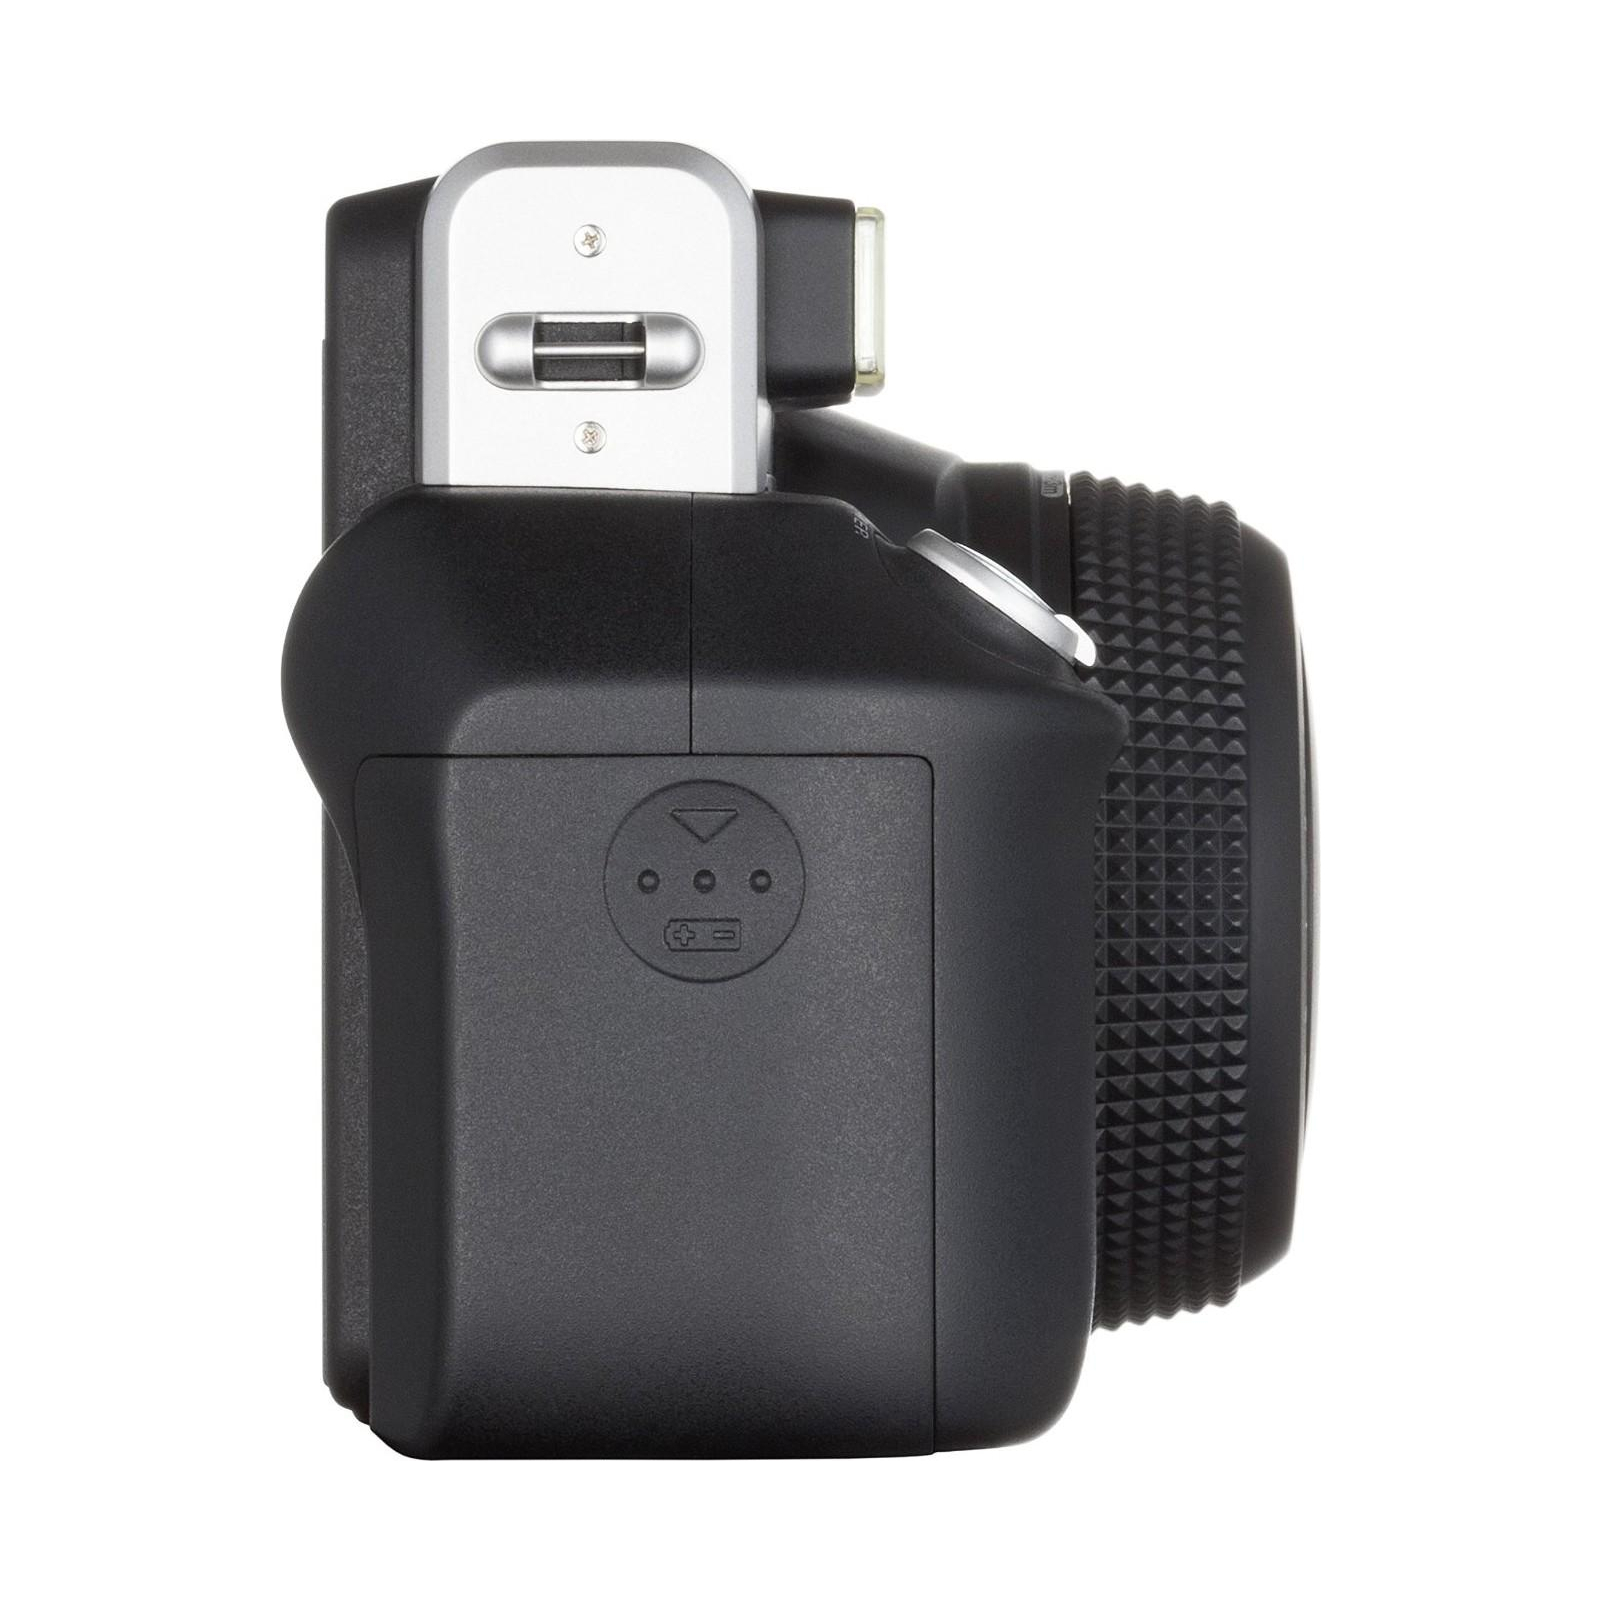 Камера моментальной печати Fujifilm Instax WIDE 300 Instant camera (16445795) изображение 6